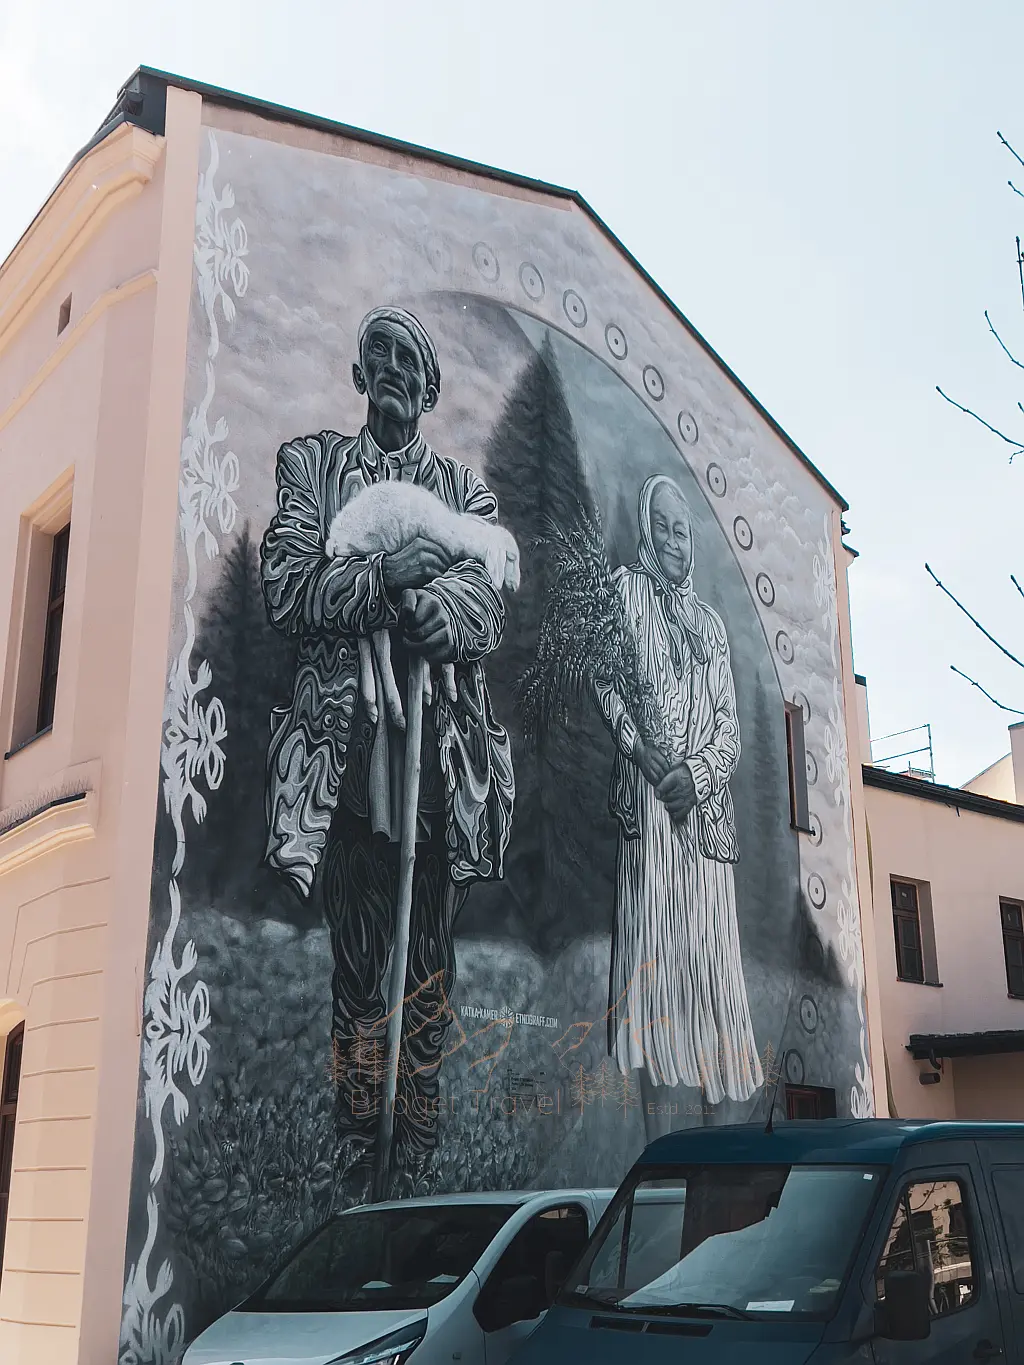 Mural Pasterz, szlak murali w Bielsku Białej